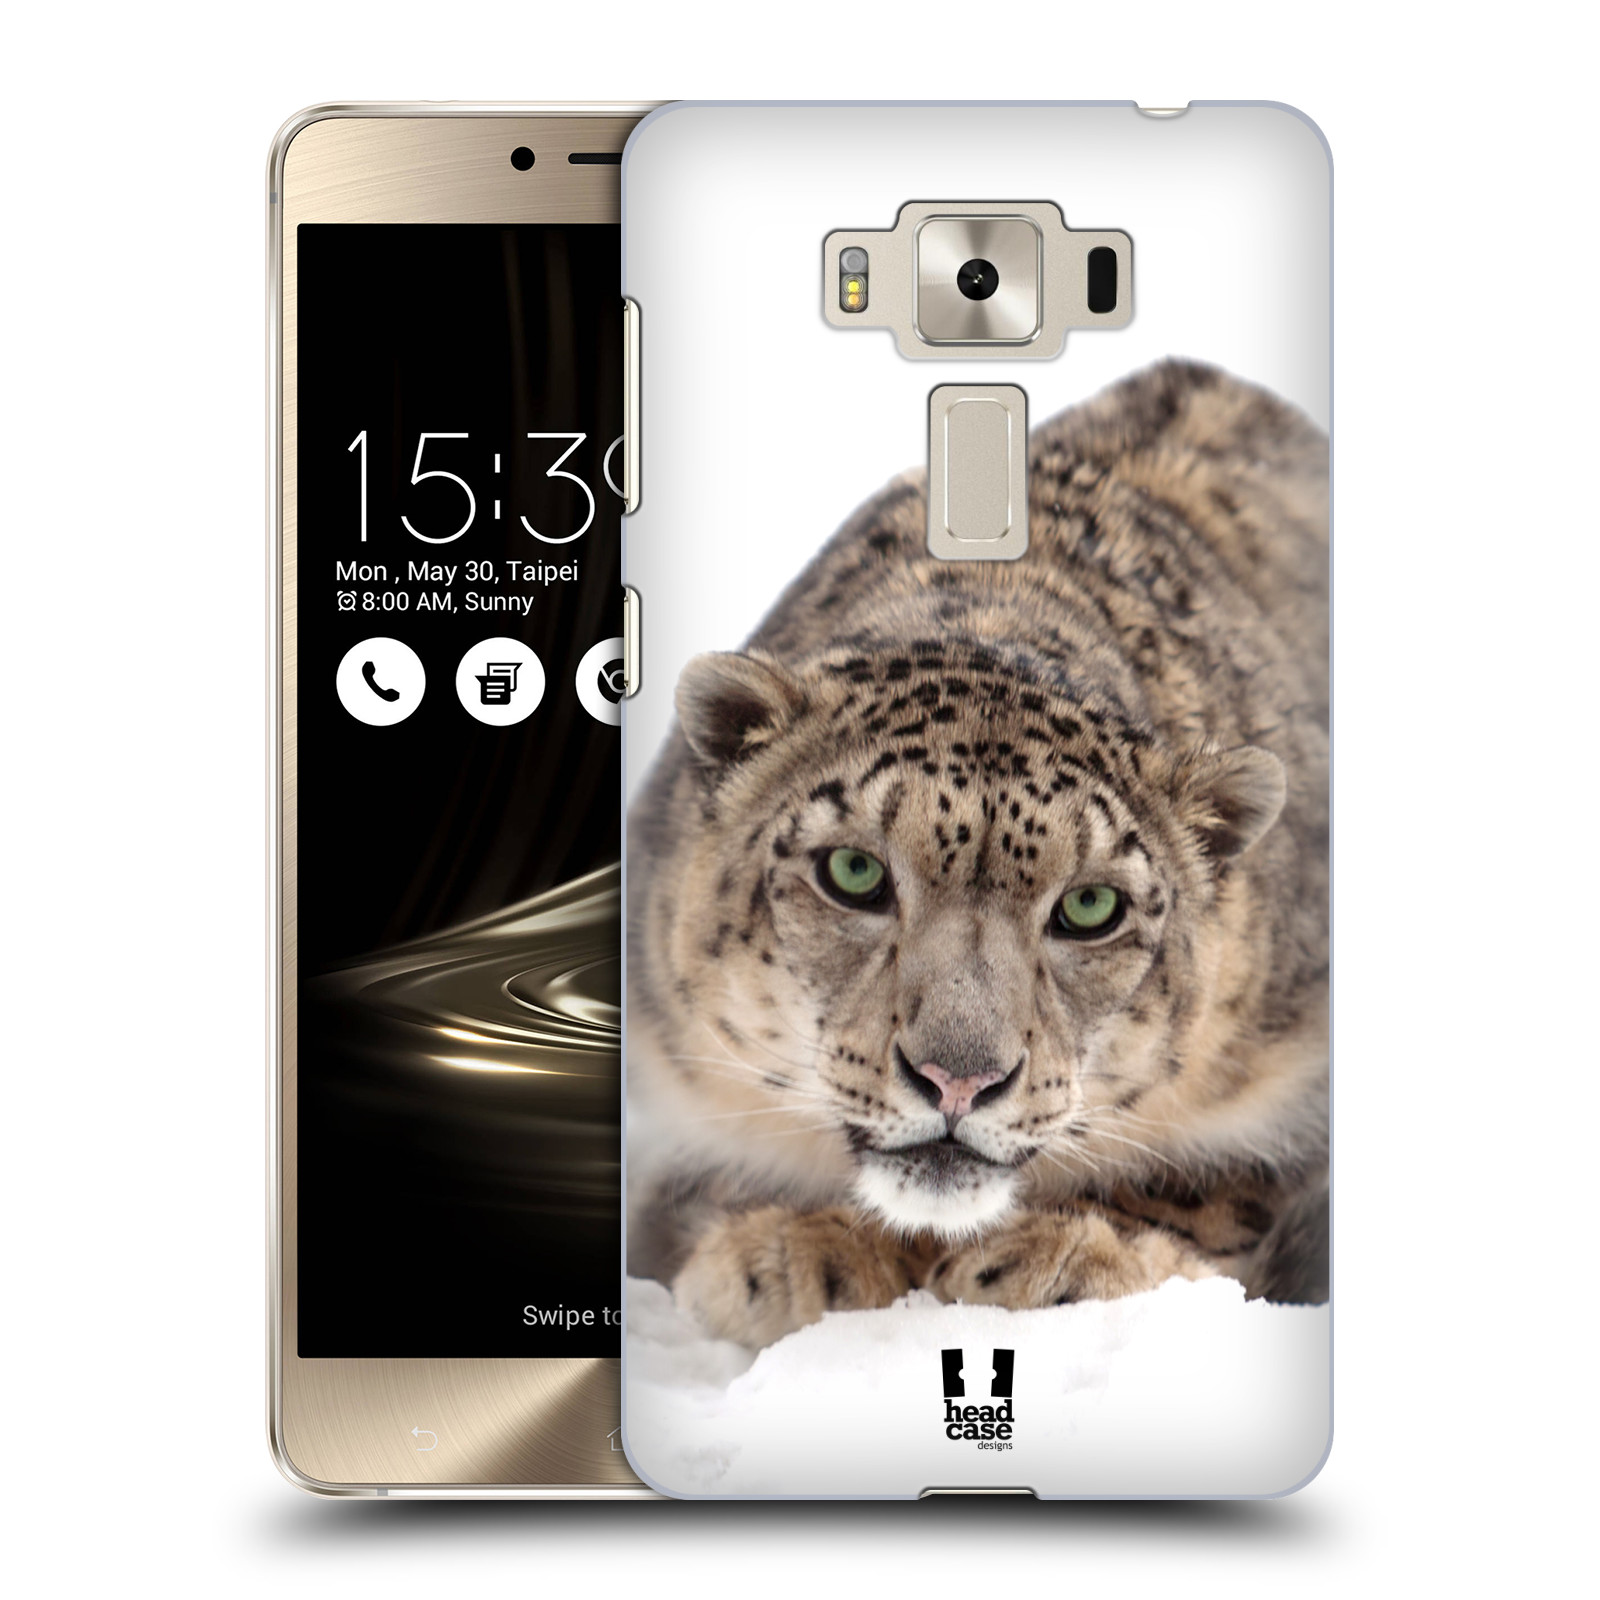 HEAD CASE plastový obal na mobil Asus Zenfone 3 DELUXE ZS550KL vzor Divočina, Divoký život a zvířata foto SNĚŽNÝ LEOPARD